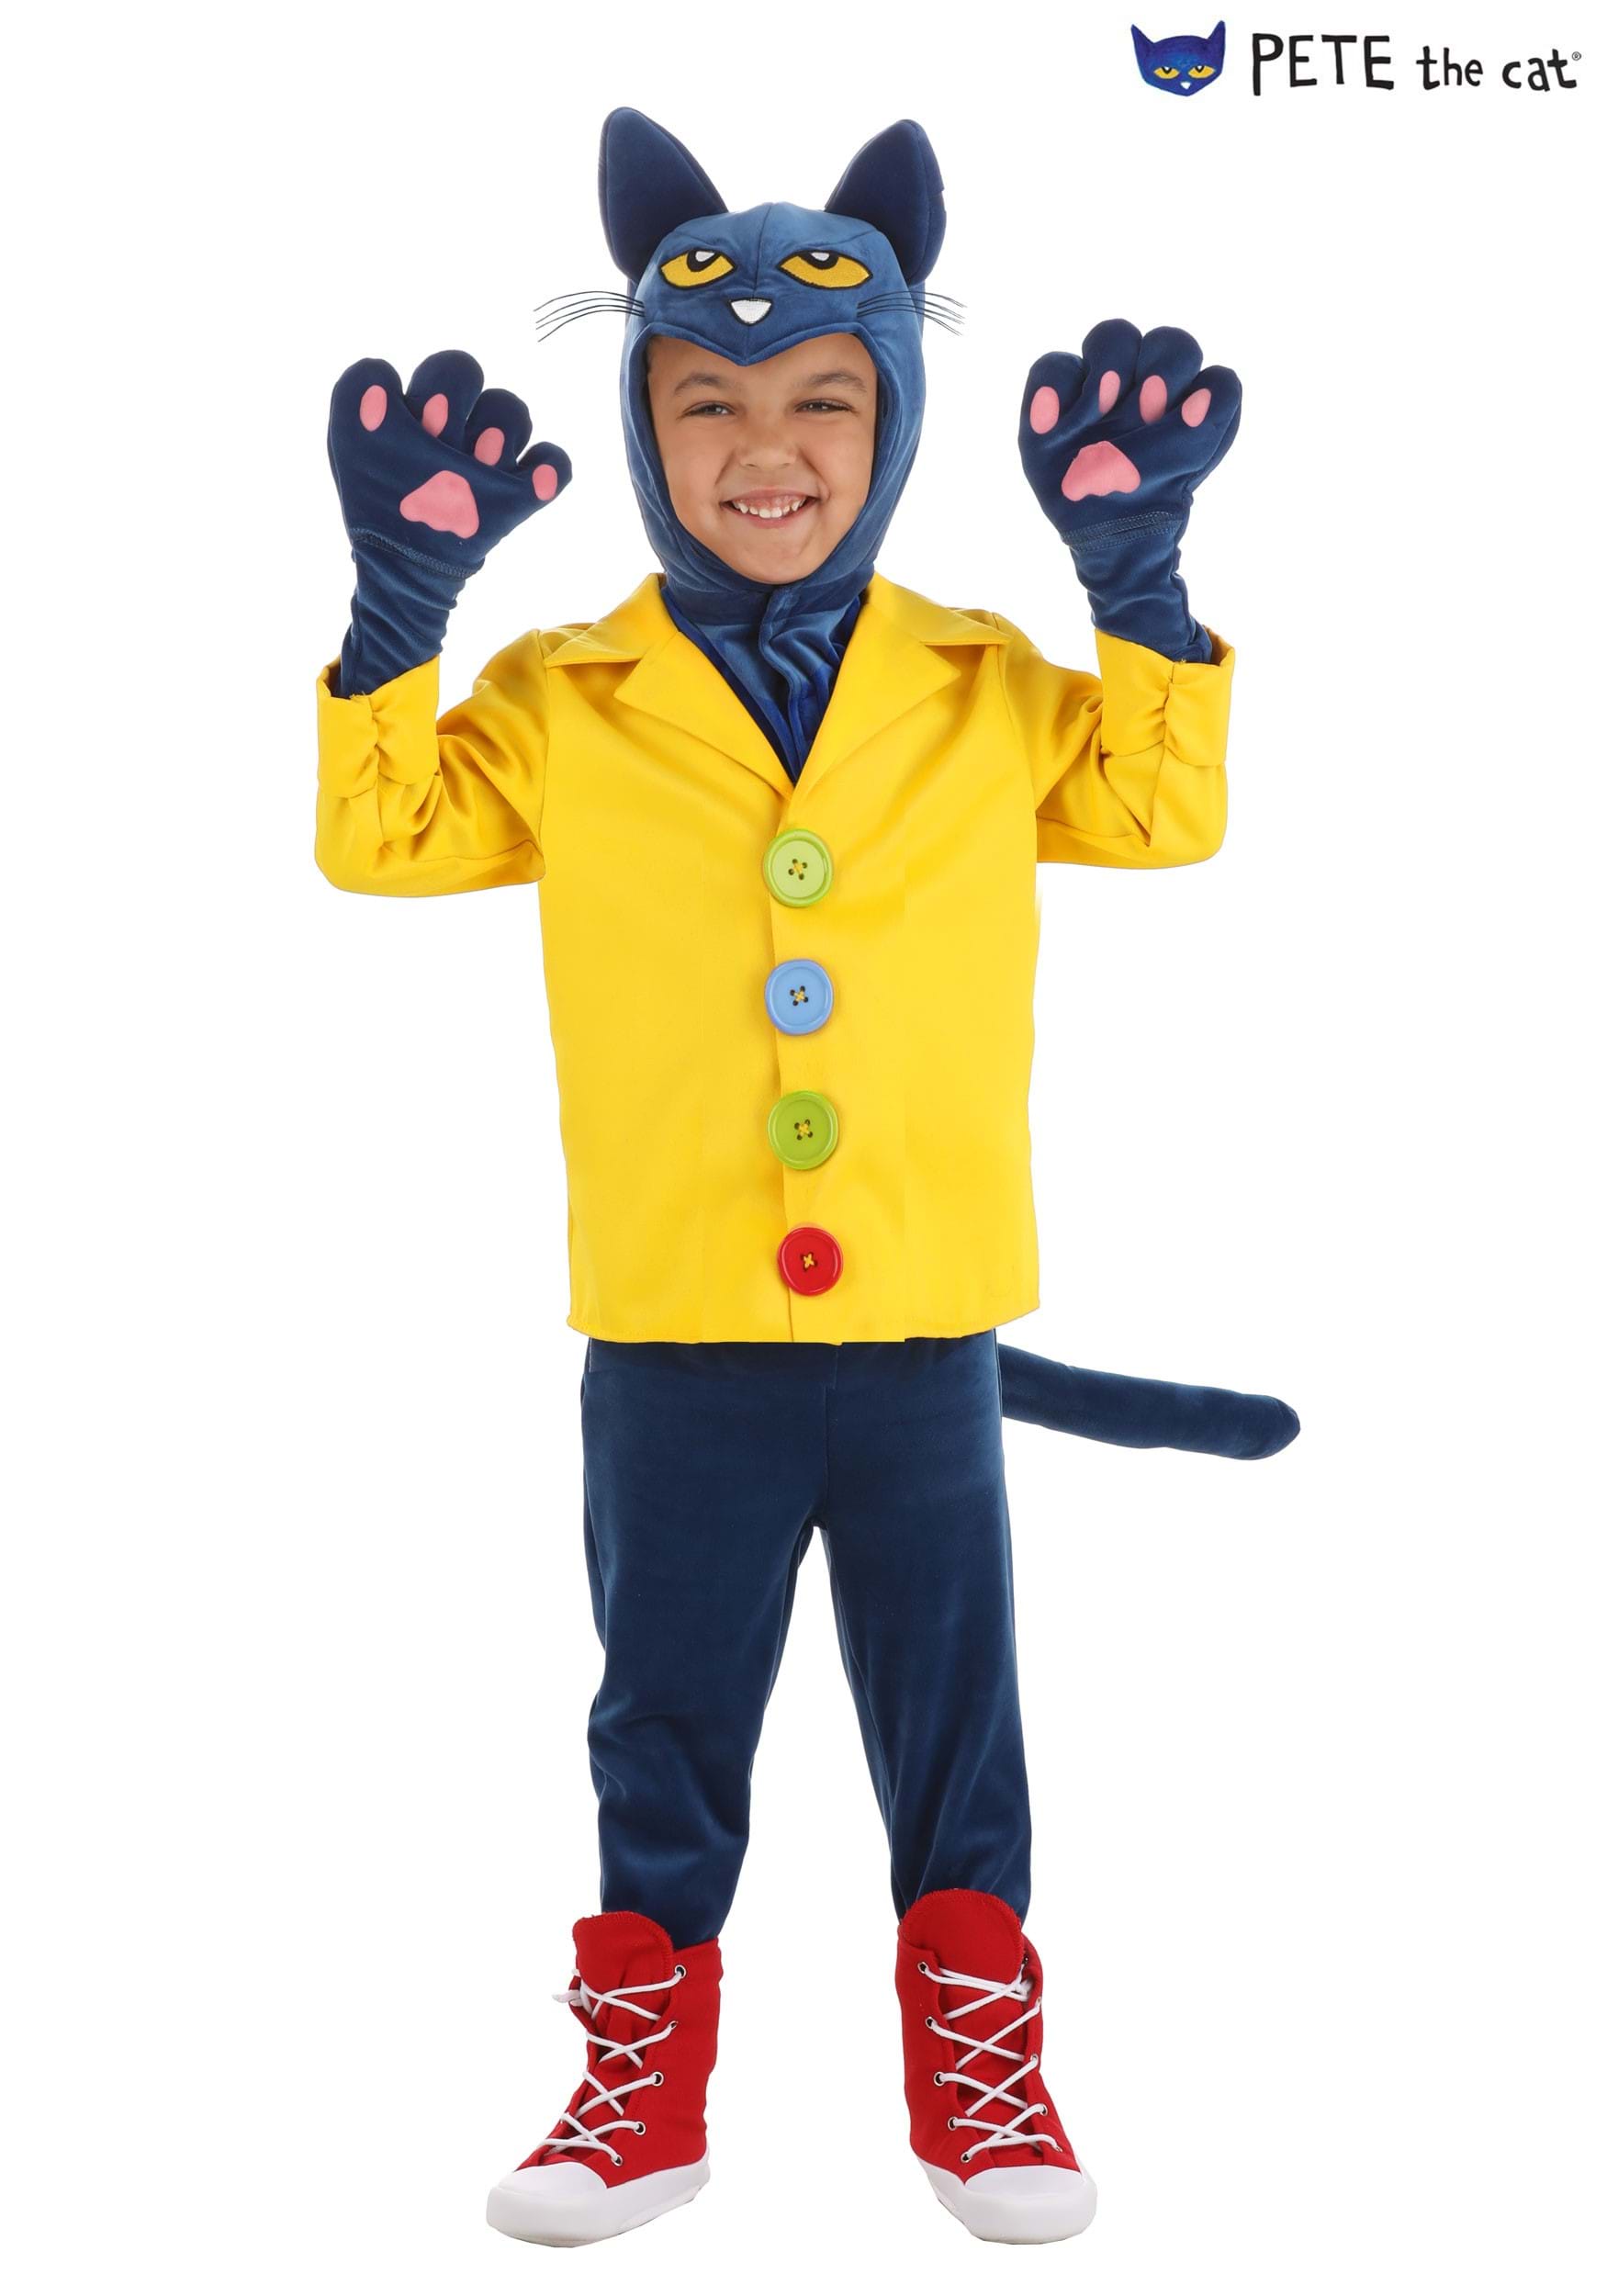 pete the cat costume